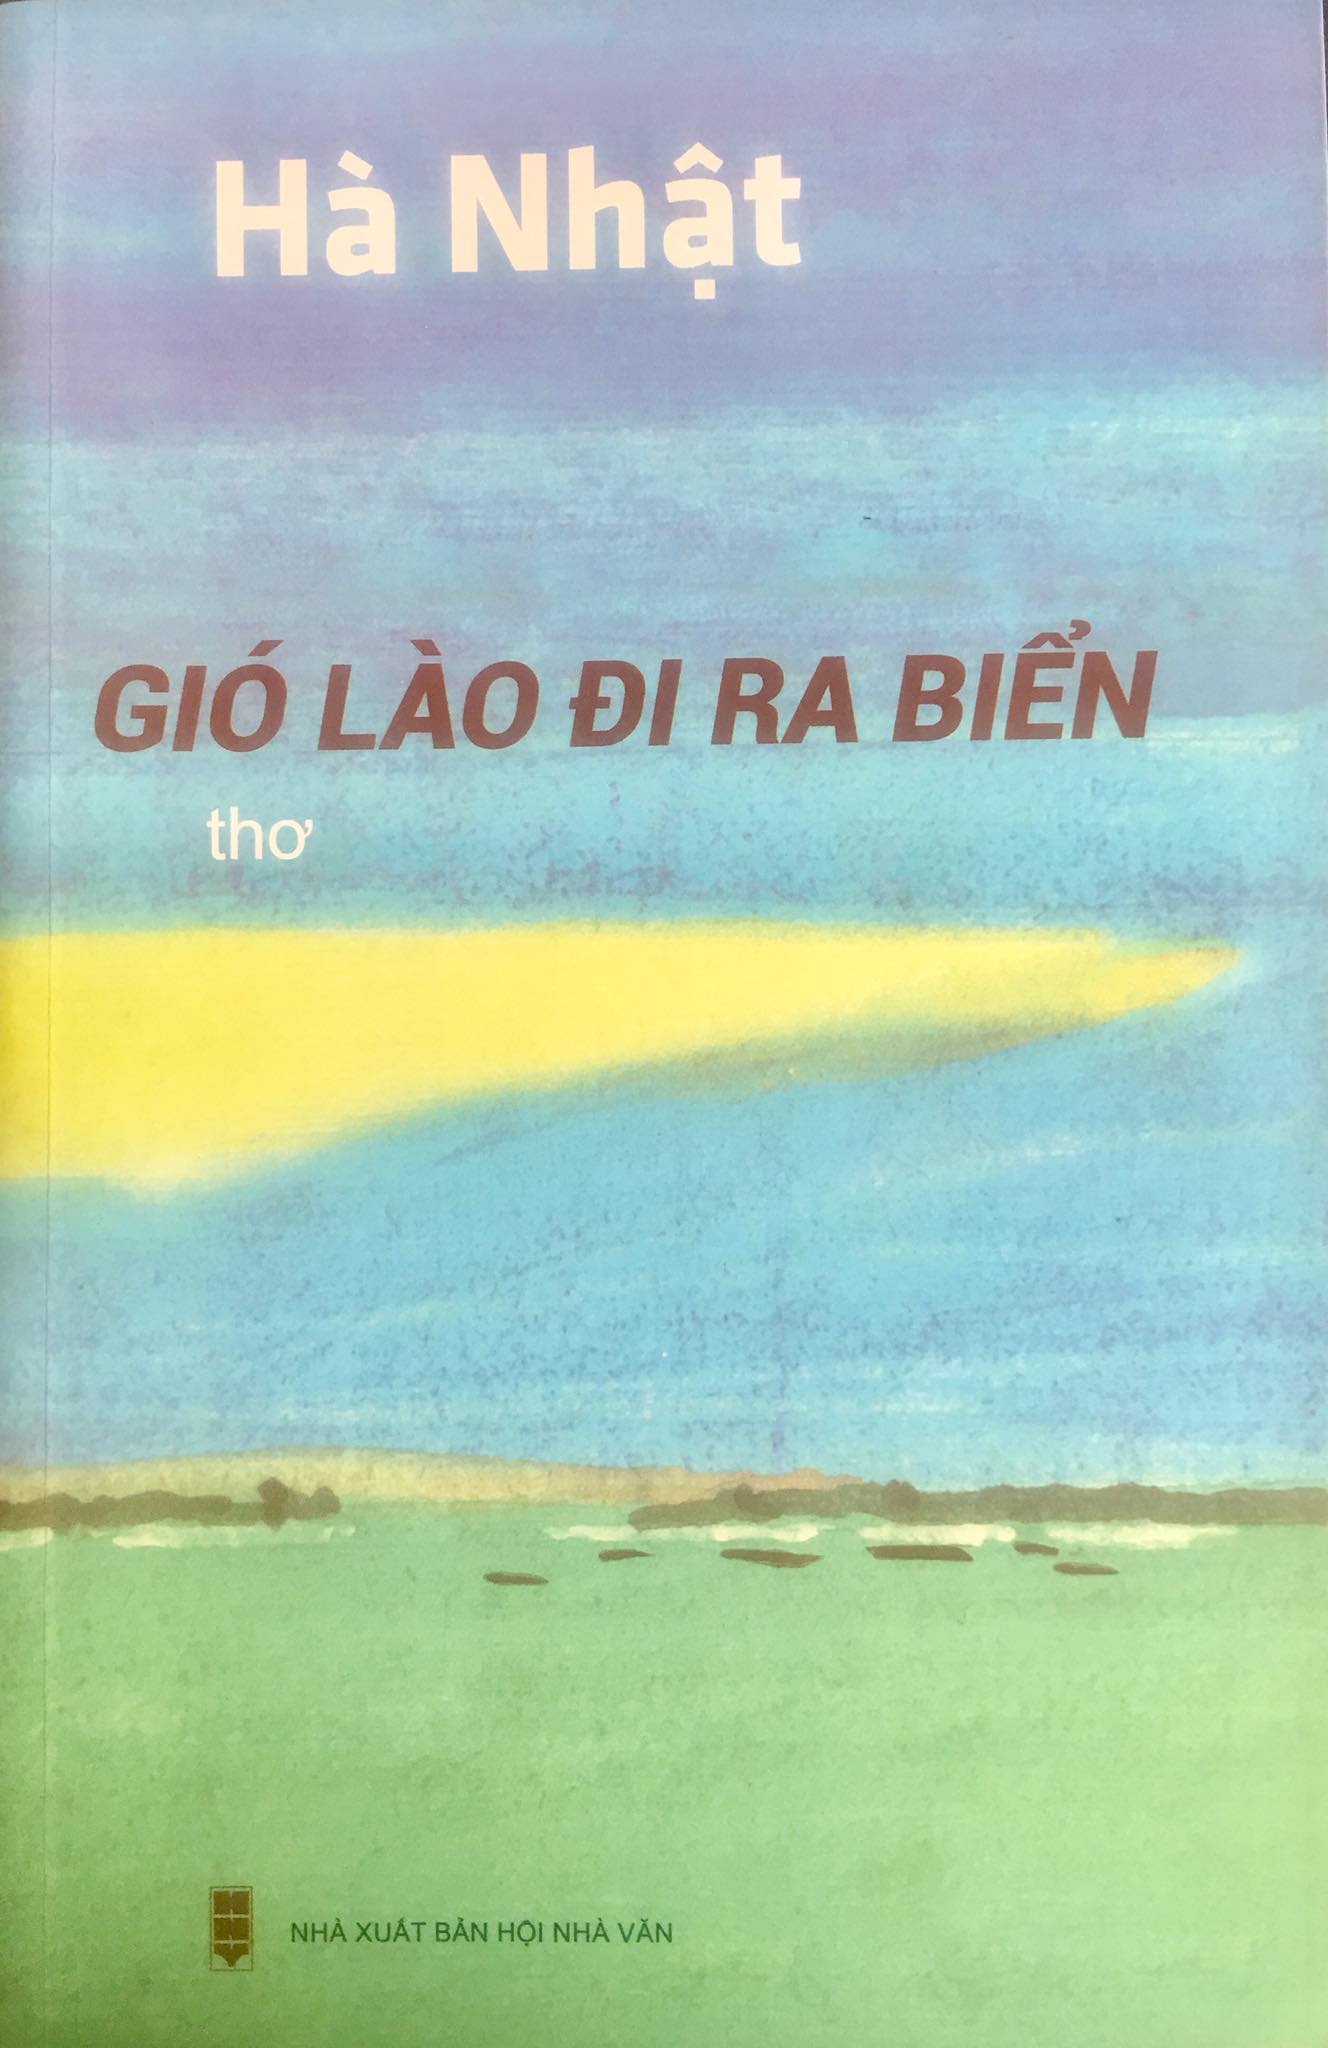  Tập thơ mới xuất bản của nhà thơ Hà Nhật.